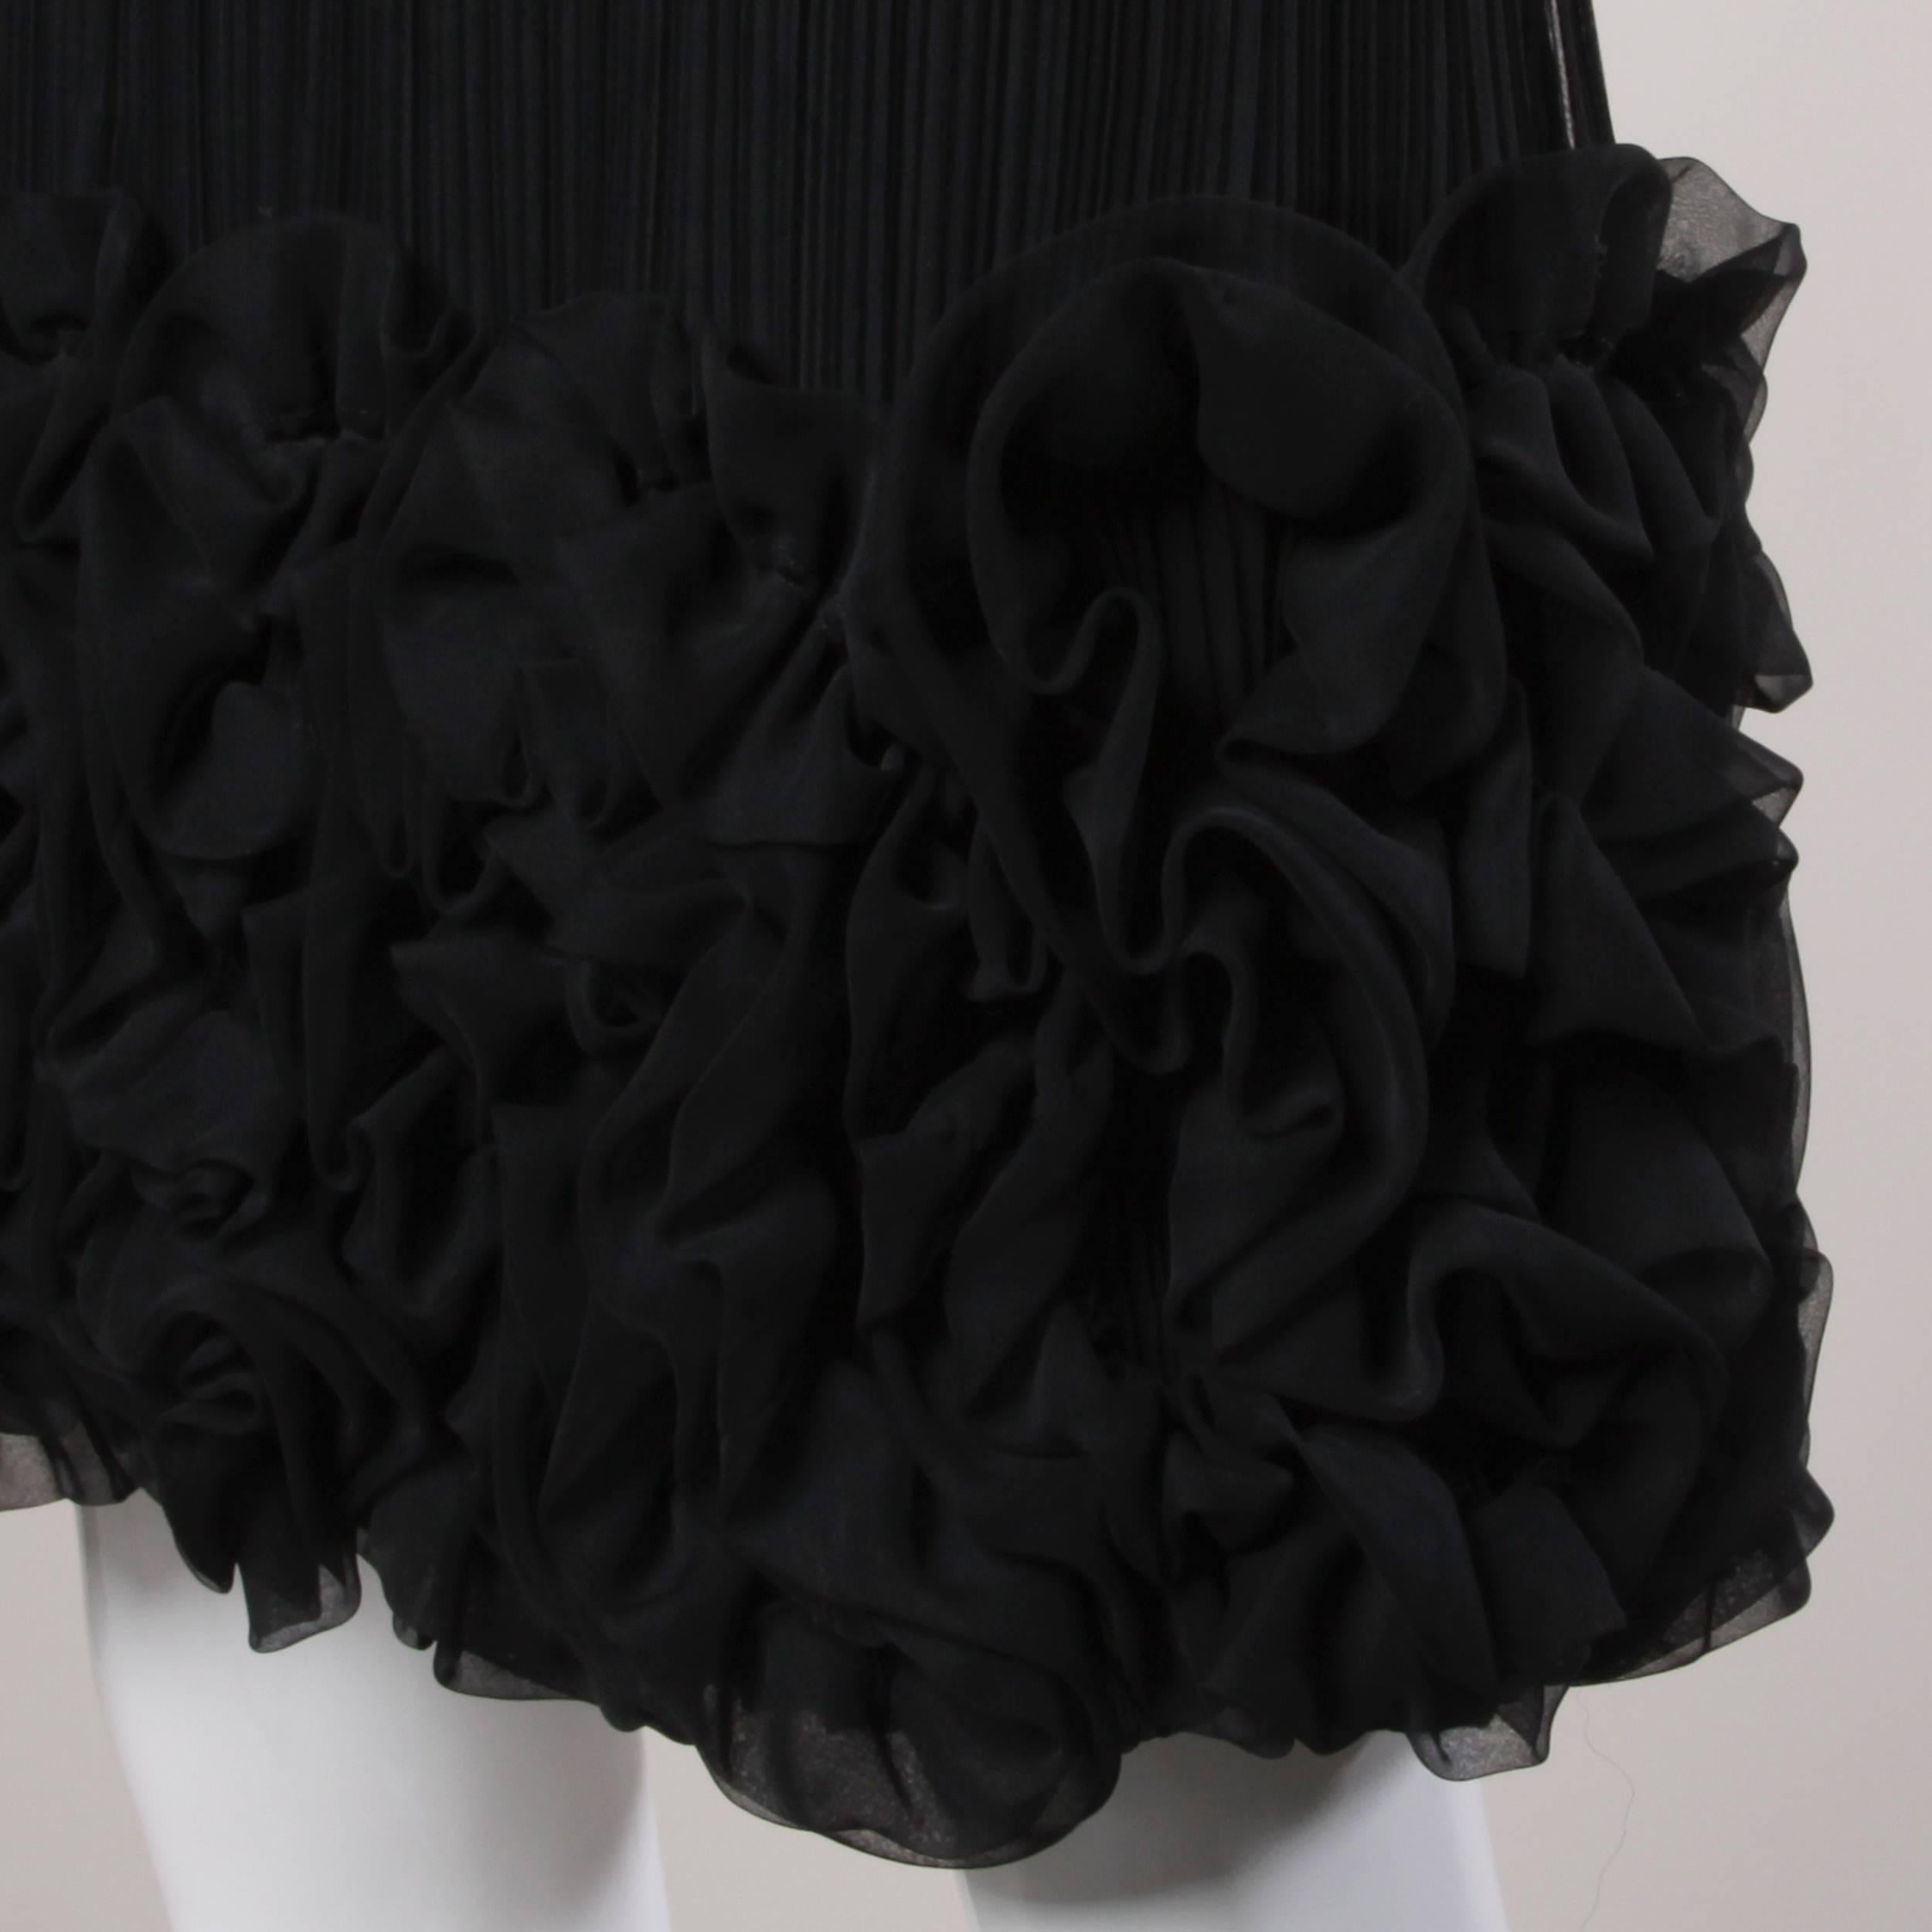 Teal Traina 1970s Vintage Black Origami Pleated Ruffle Dress 1